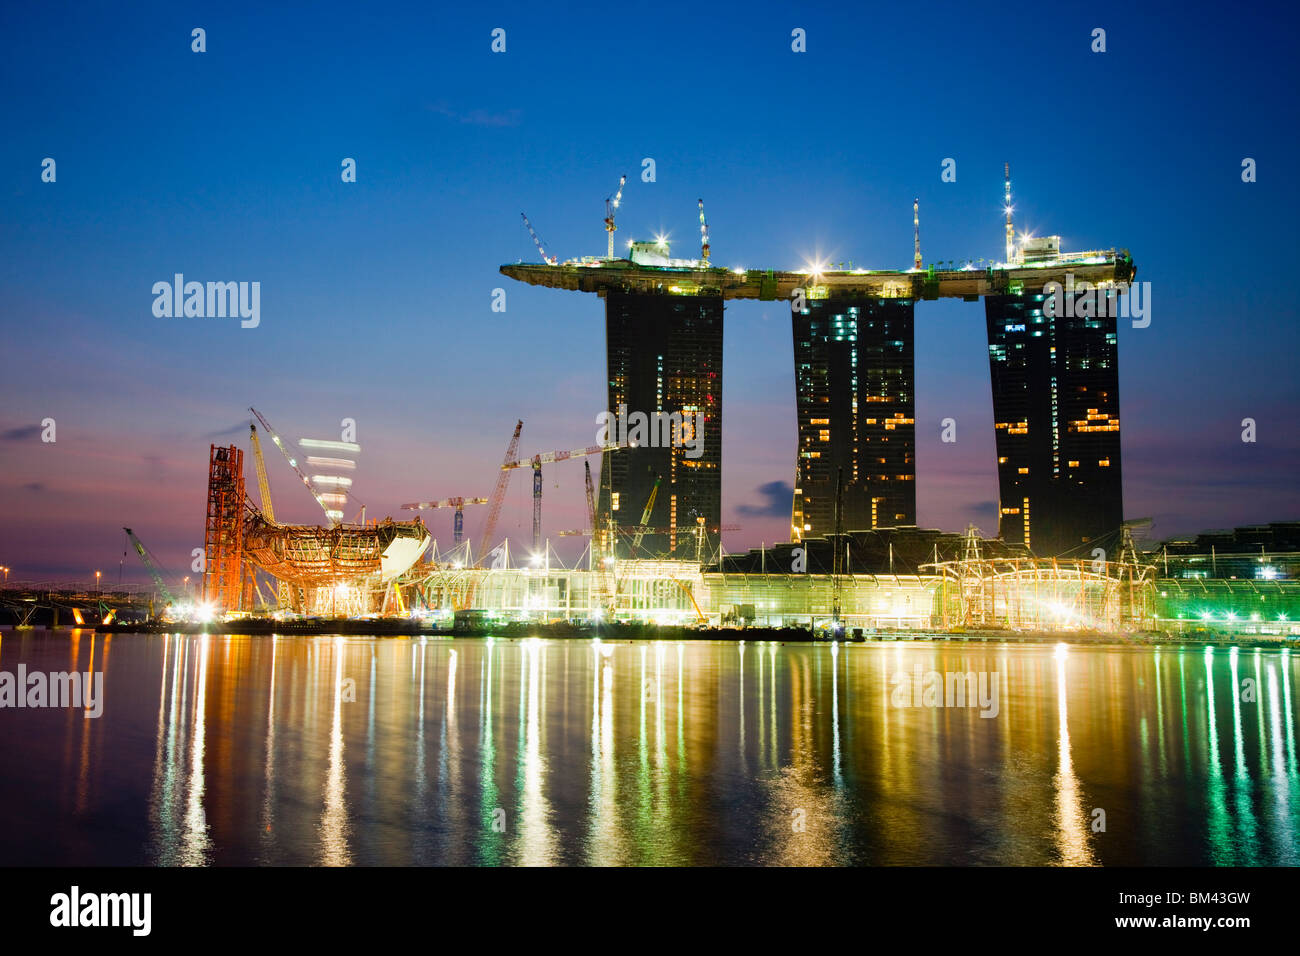 Le Marina Bay Sands Hotel and Casino en construction sur le front de mer de Marina Bay, Singapour Banque D'Images